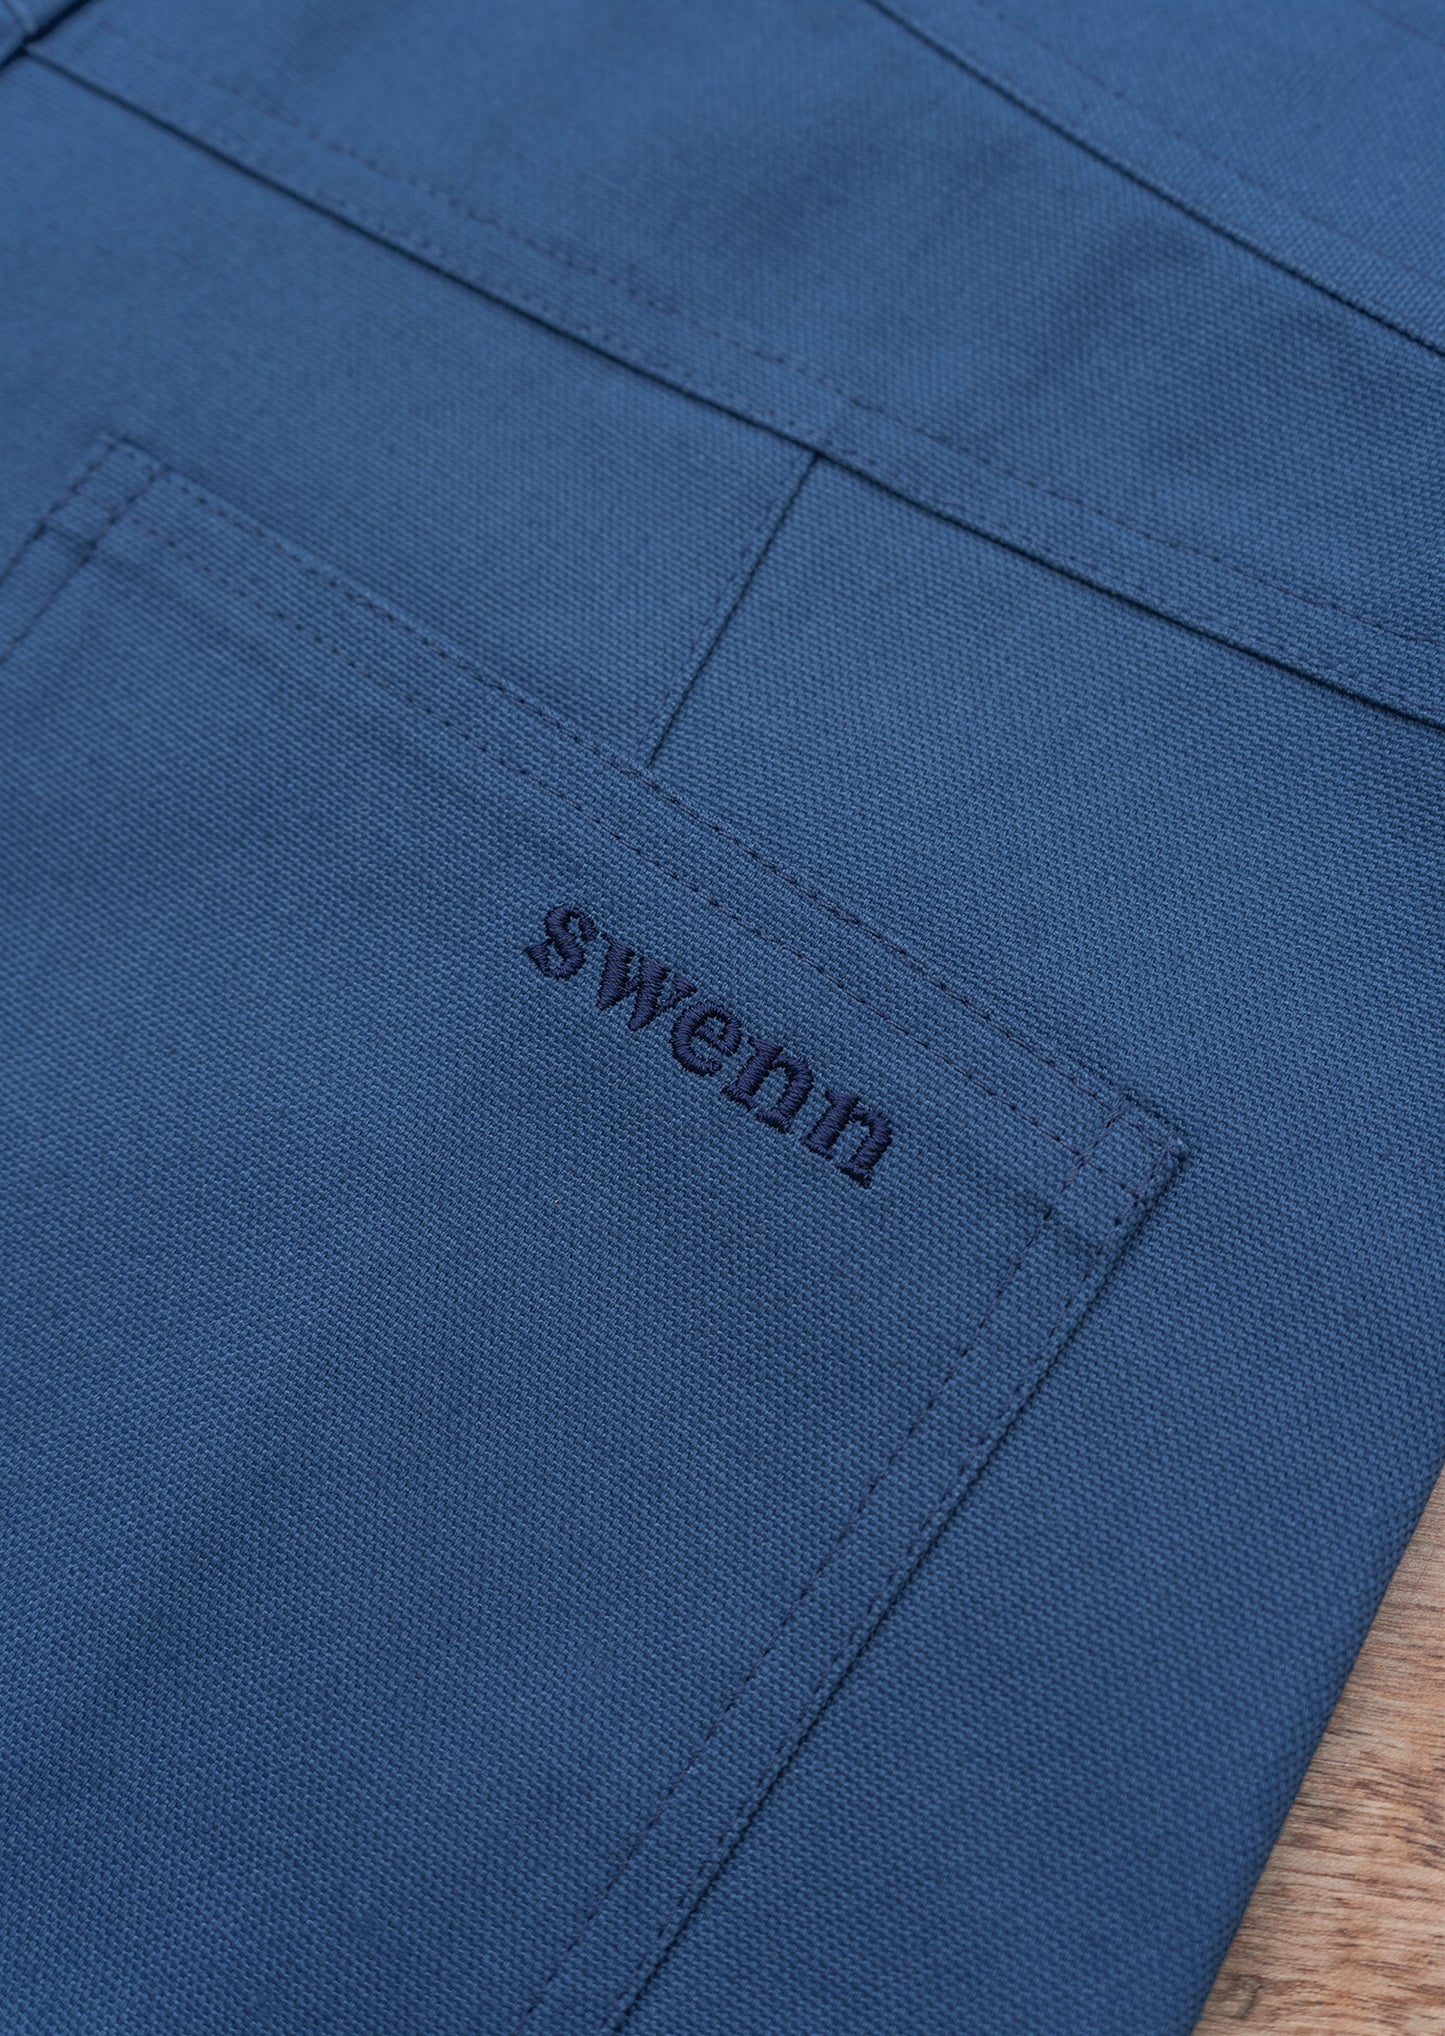 Shorts - denim blue